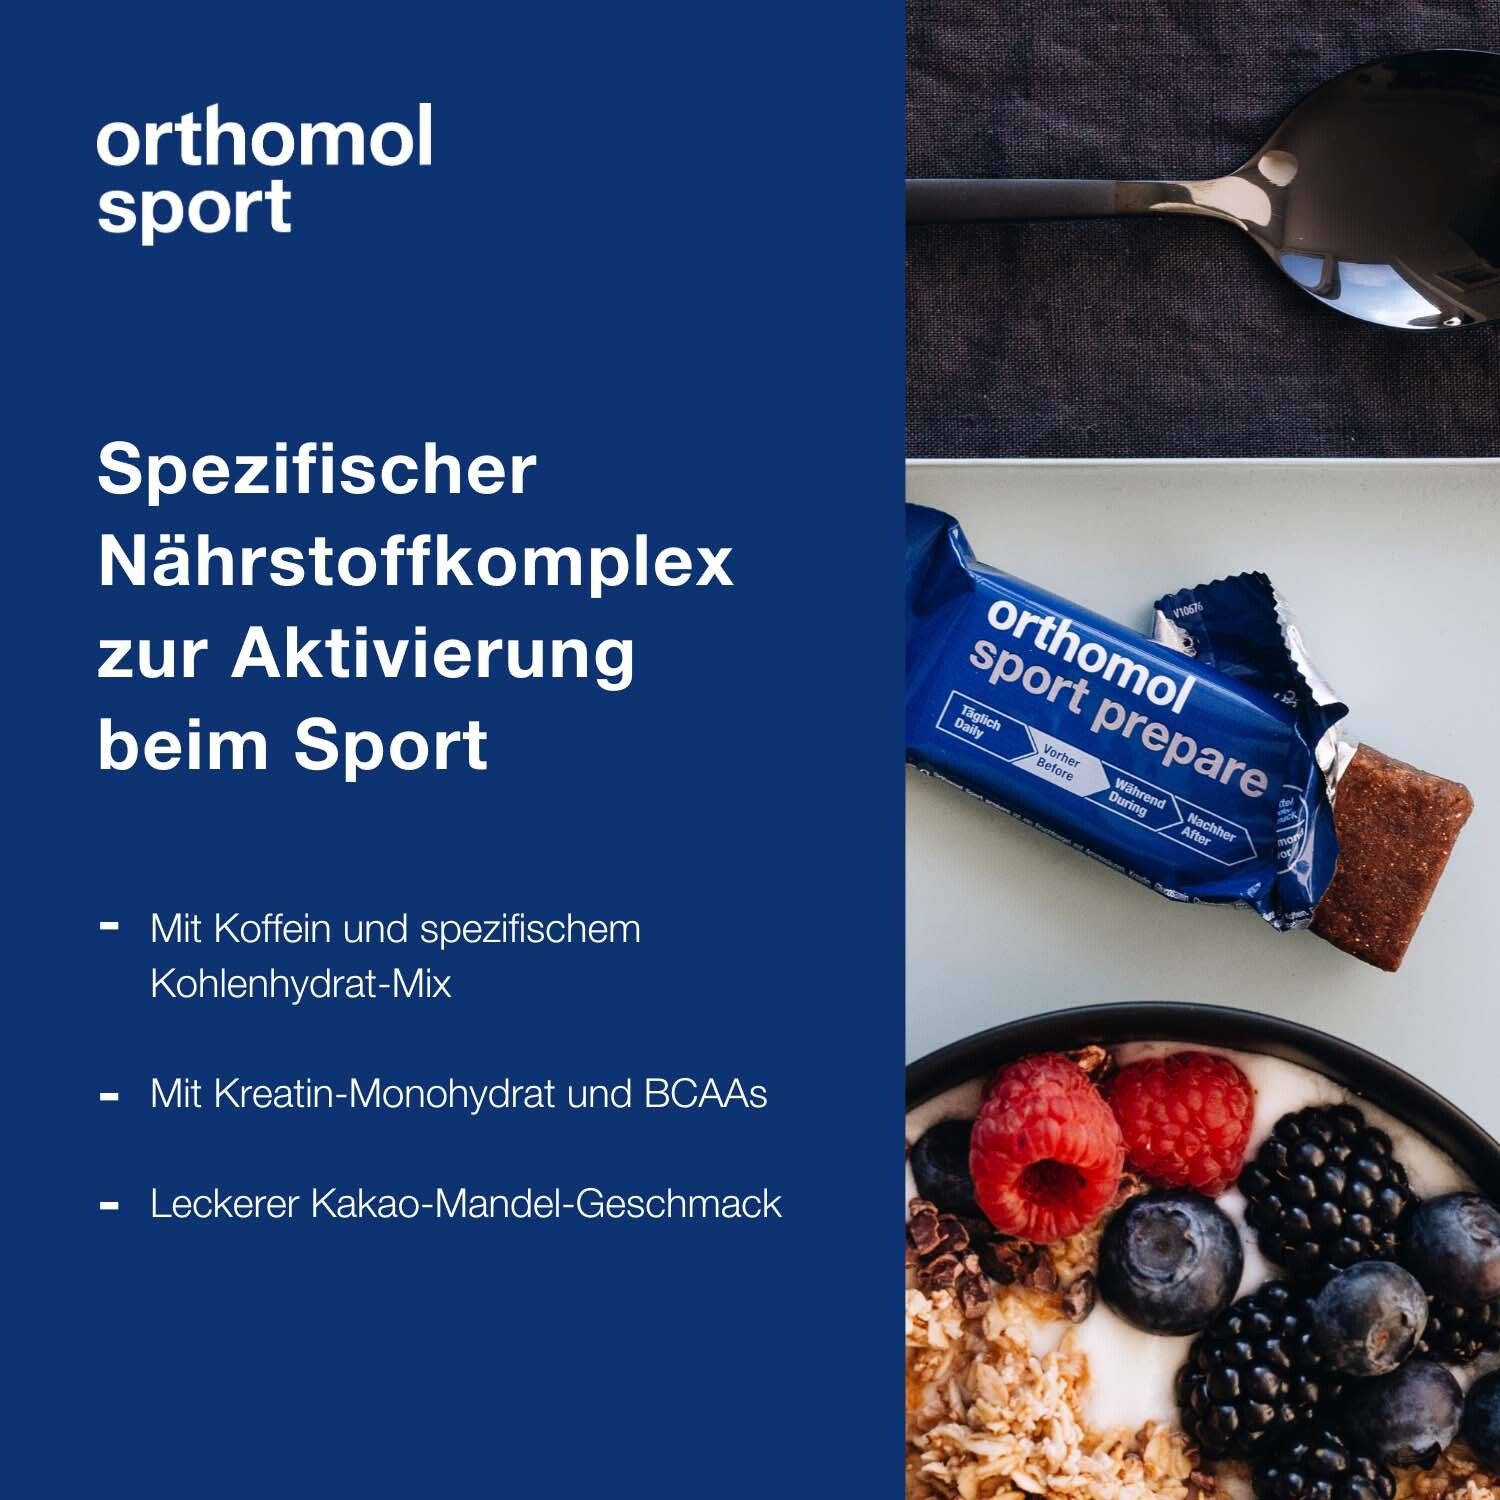 Orthomol Sport prepare - Fruchtriegel mit Kreatin, Koffein und BCAA - Einnahme vor dem Training - Schoko-Mandel-Dattel-Geschmack - Riegel